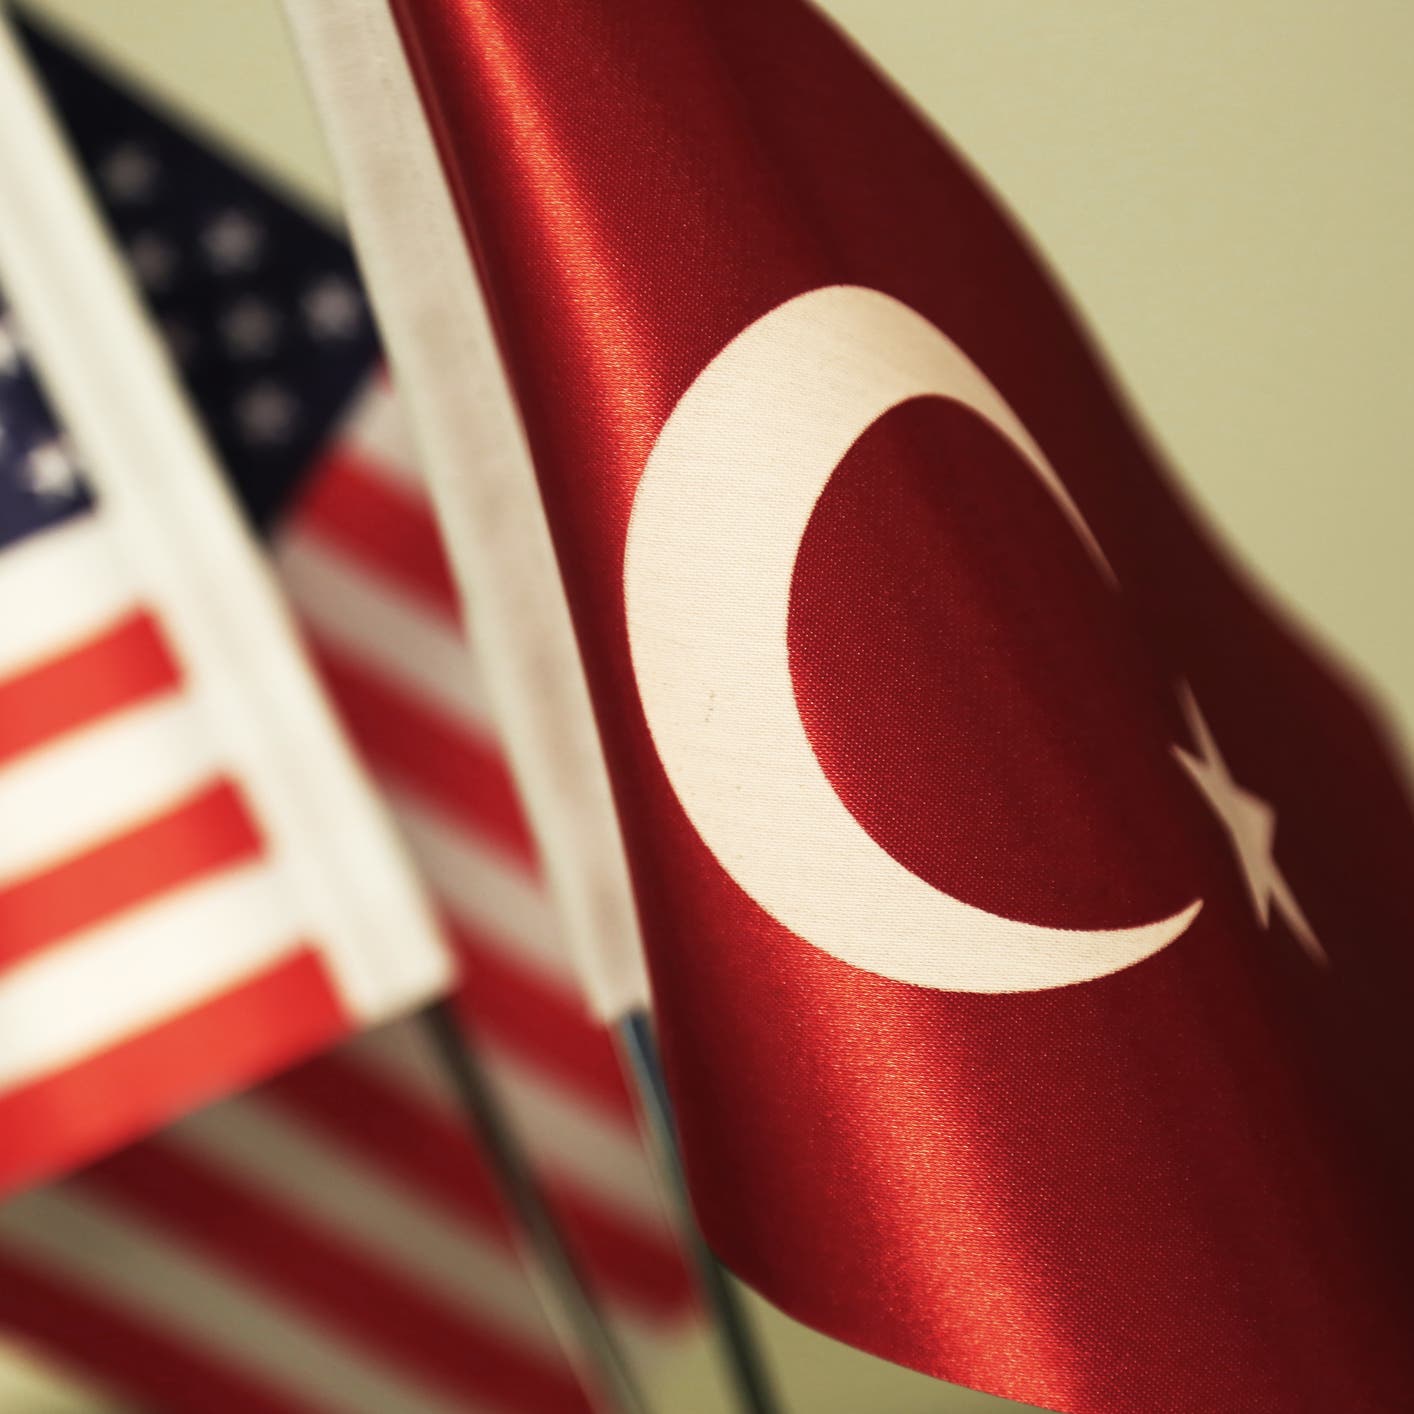 واشنطن: تركيا تستخدم قوانين الإرهاب للتضييق على الحريات